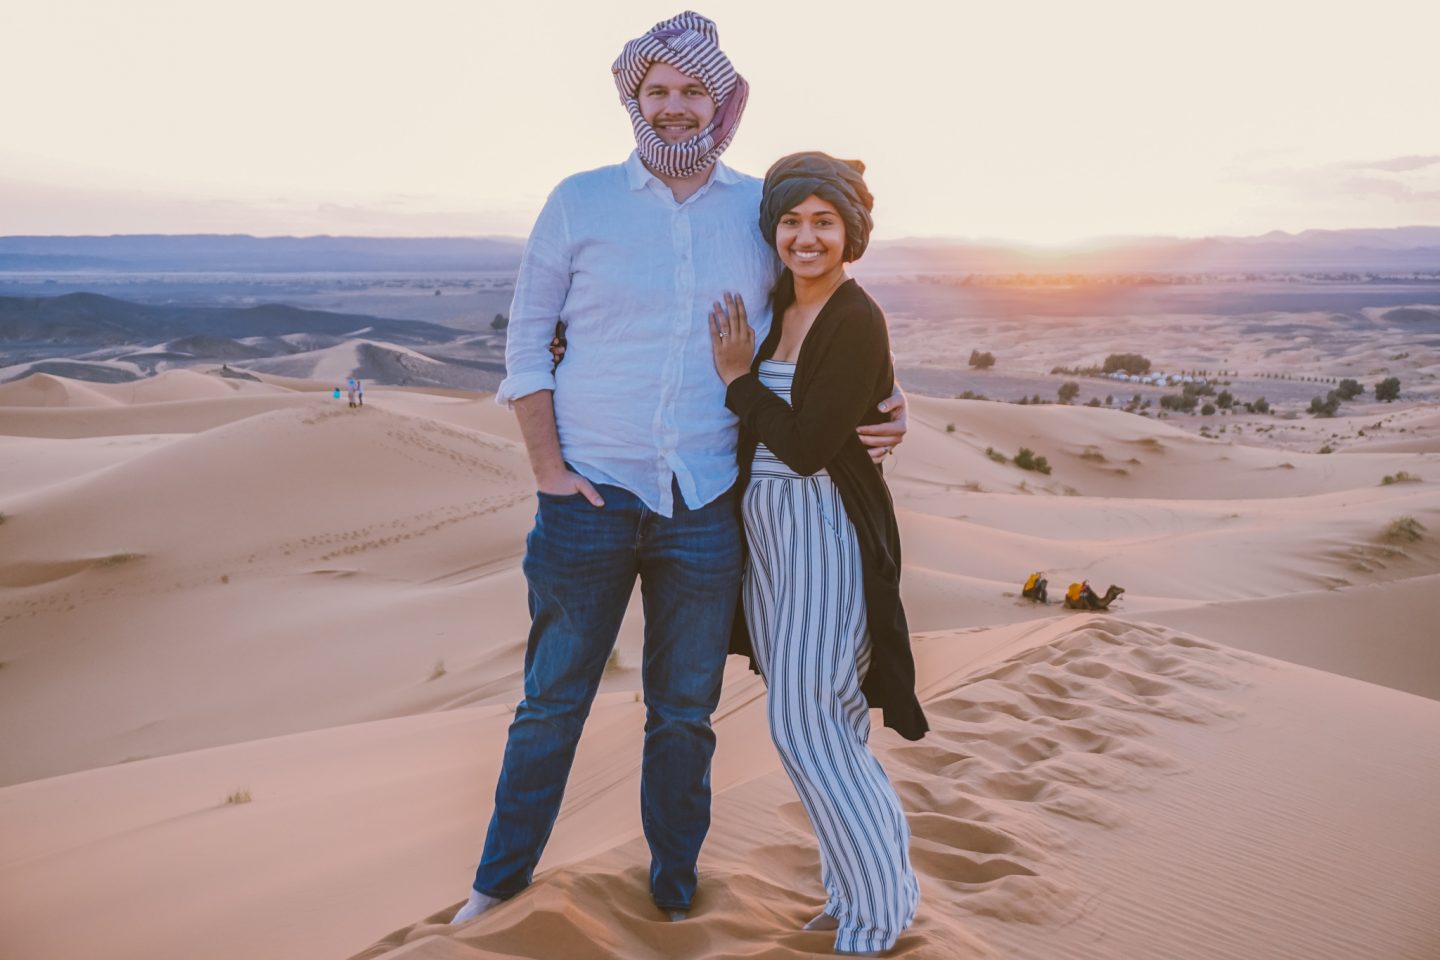 3 Day Sahara Desert Trip from Marrakech- Monique McHugh Blog